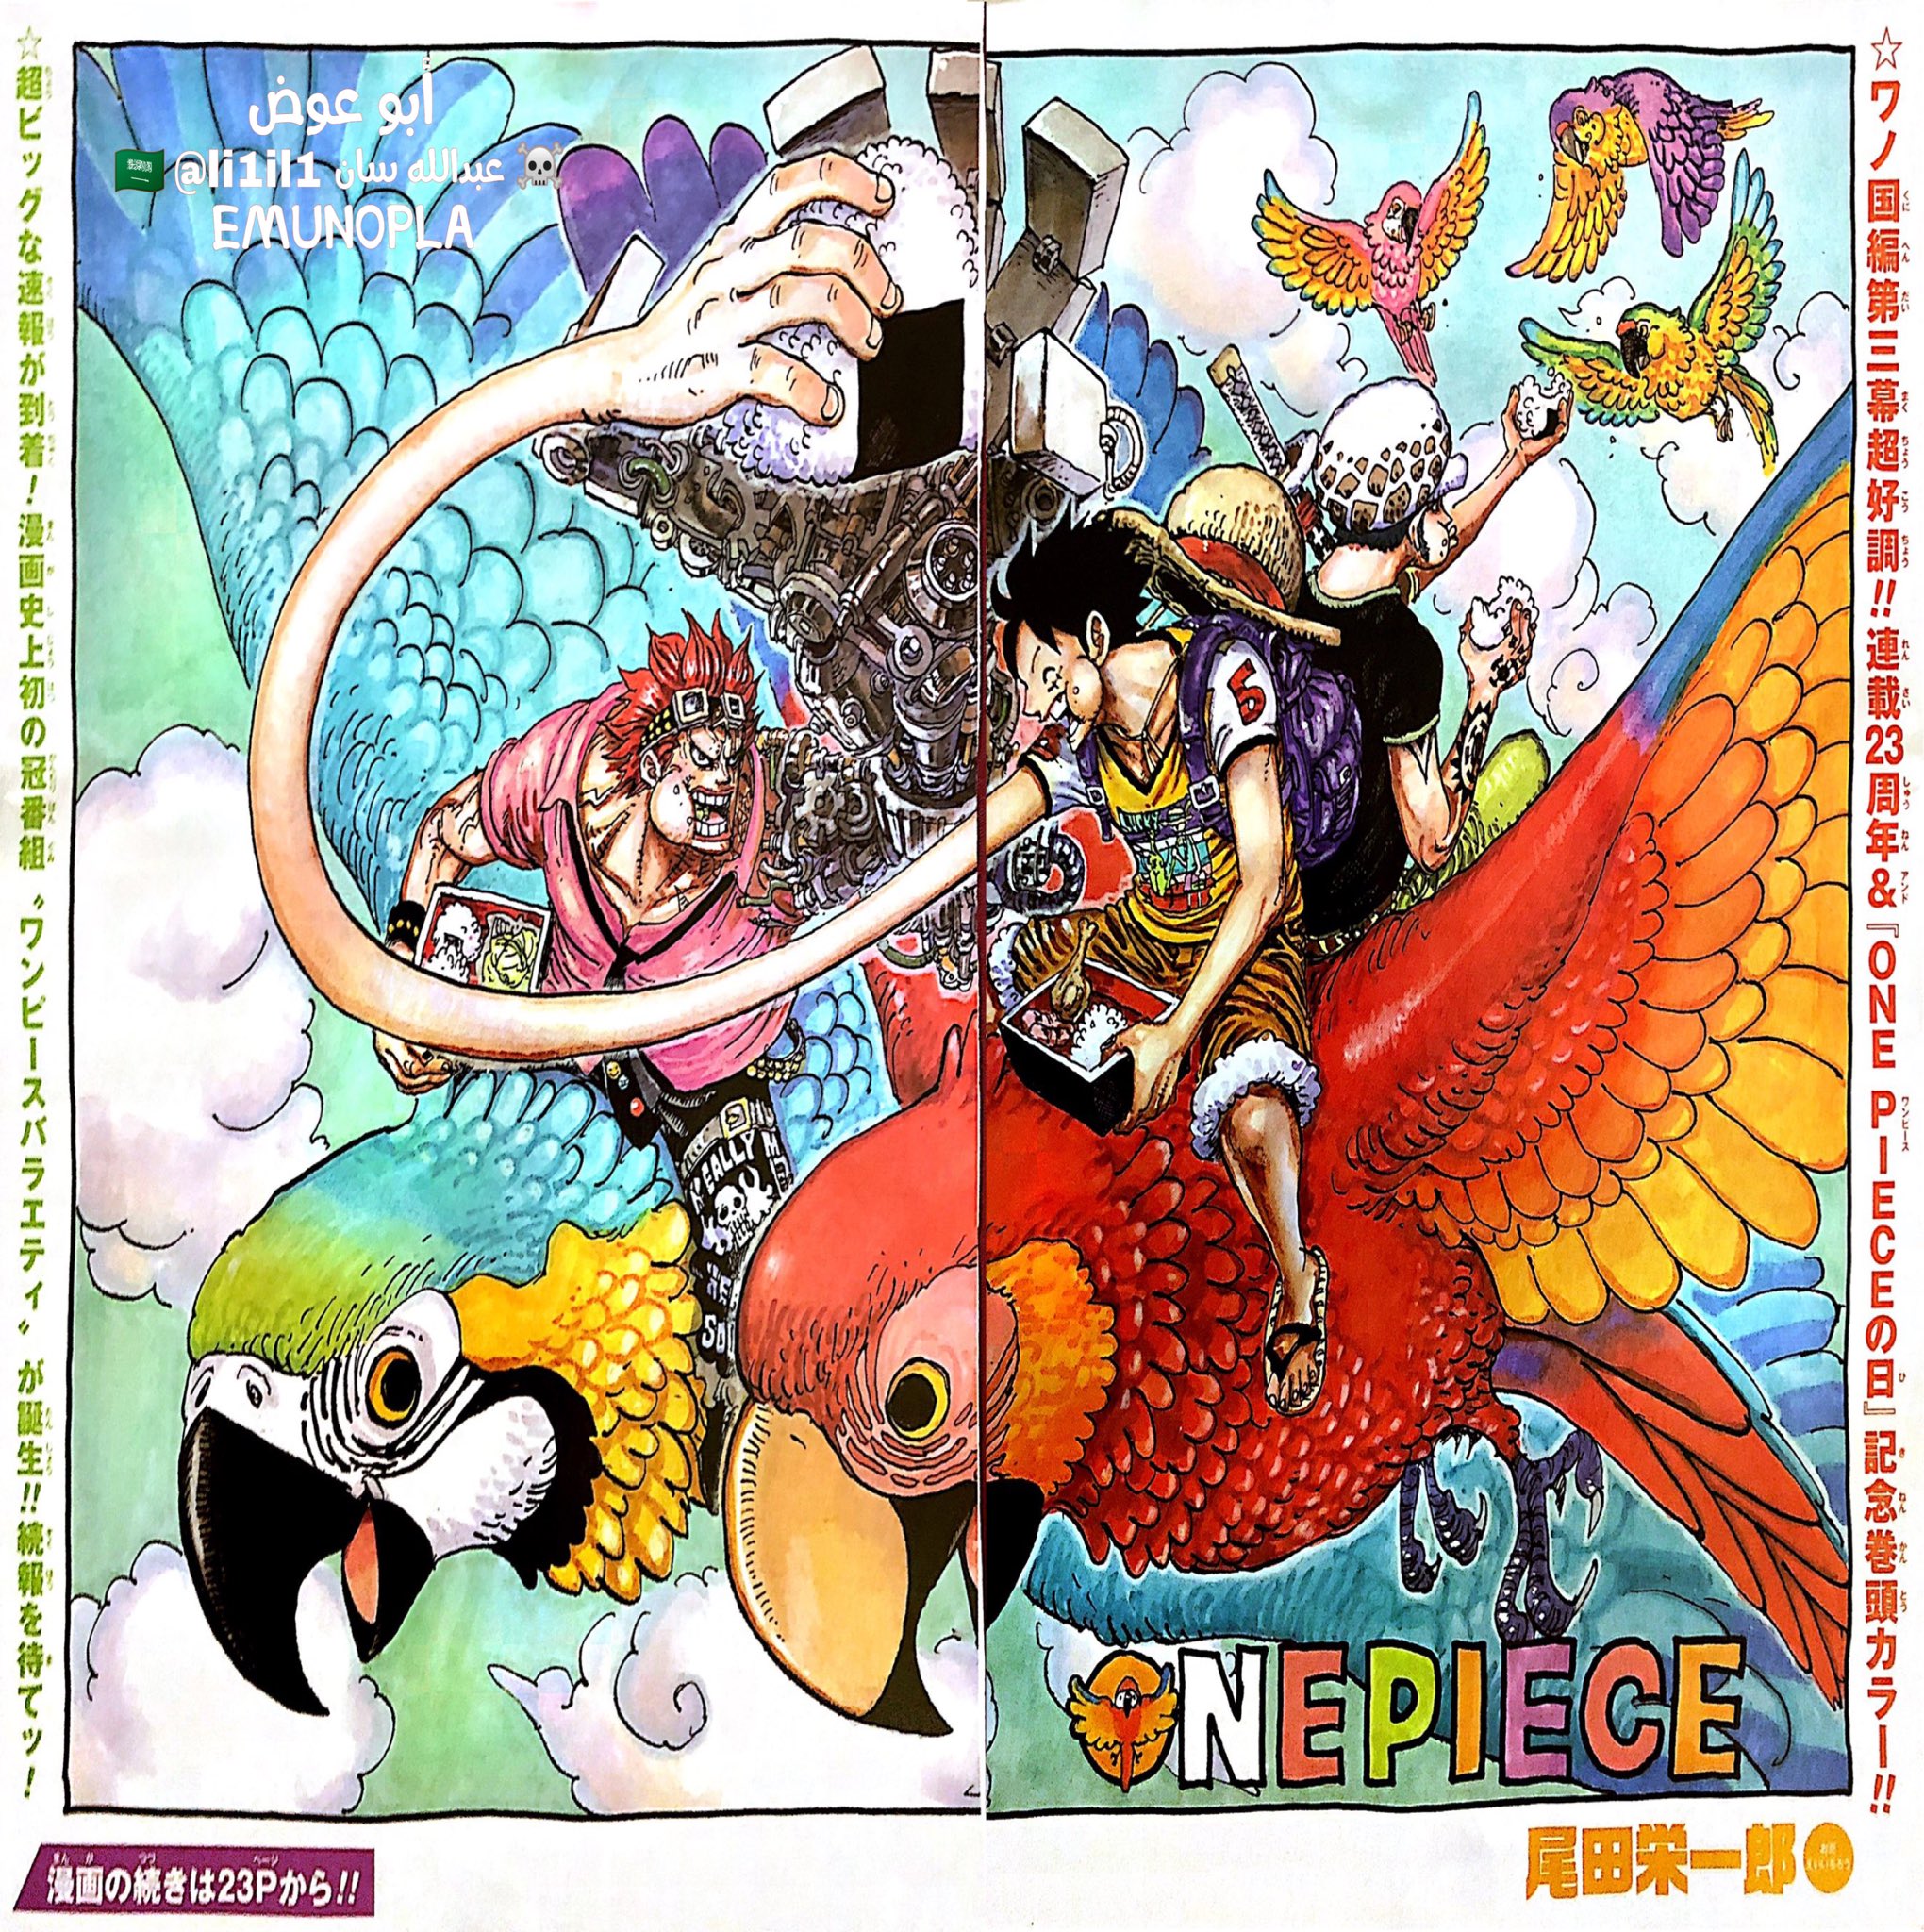 Hình ảnh One Piece mang đến cho bạn một thế giới tuyệt vời và đầy màu sắc. Những hình ảnh này sẽ đưa bạn đến với những hình ảnh tuyệt đẹp, đầy kỳ vọng về cuộc phiêu lưu của băng Mũ Rơm. Còn chần chừ gì mà không đến với những hình ảnh One Piece để tận hưởng những trải nghiệm tuyệt vời này.